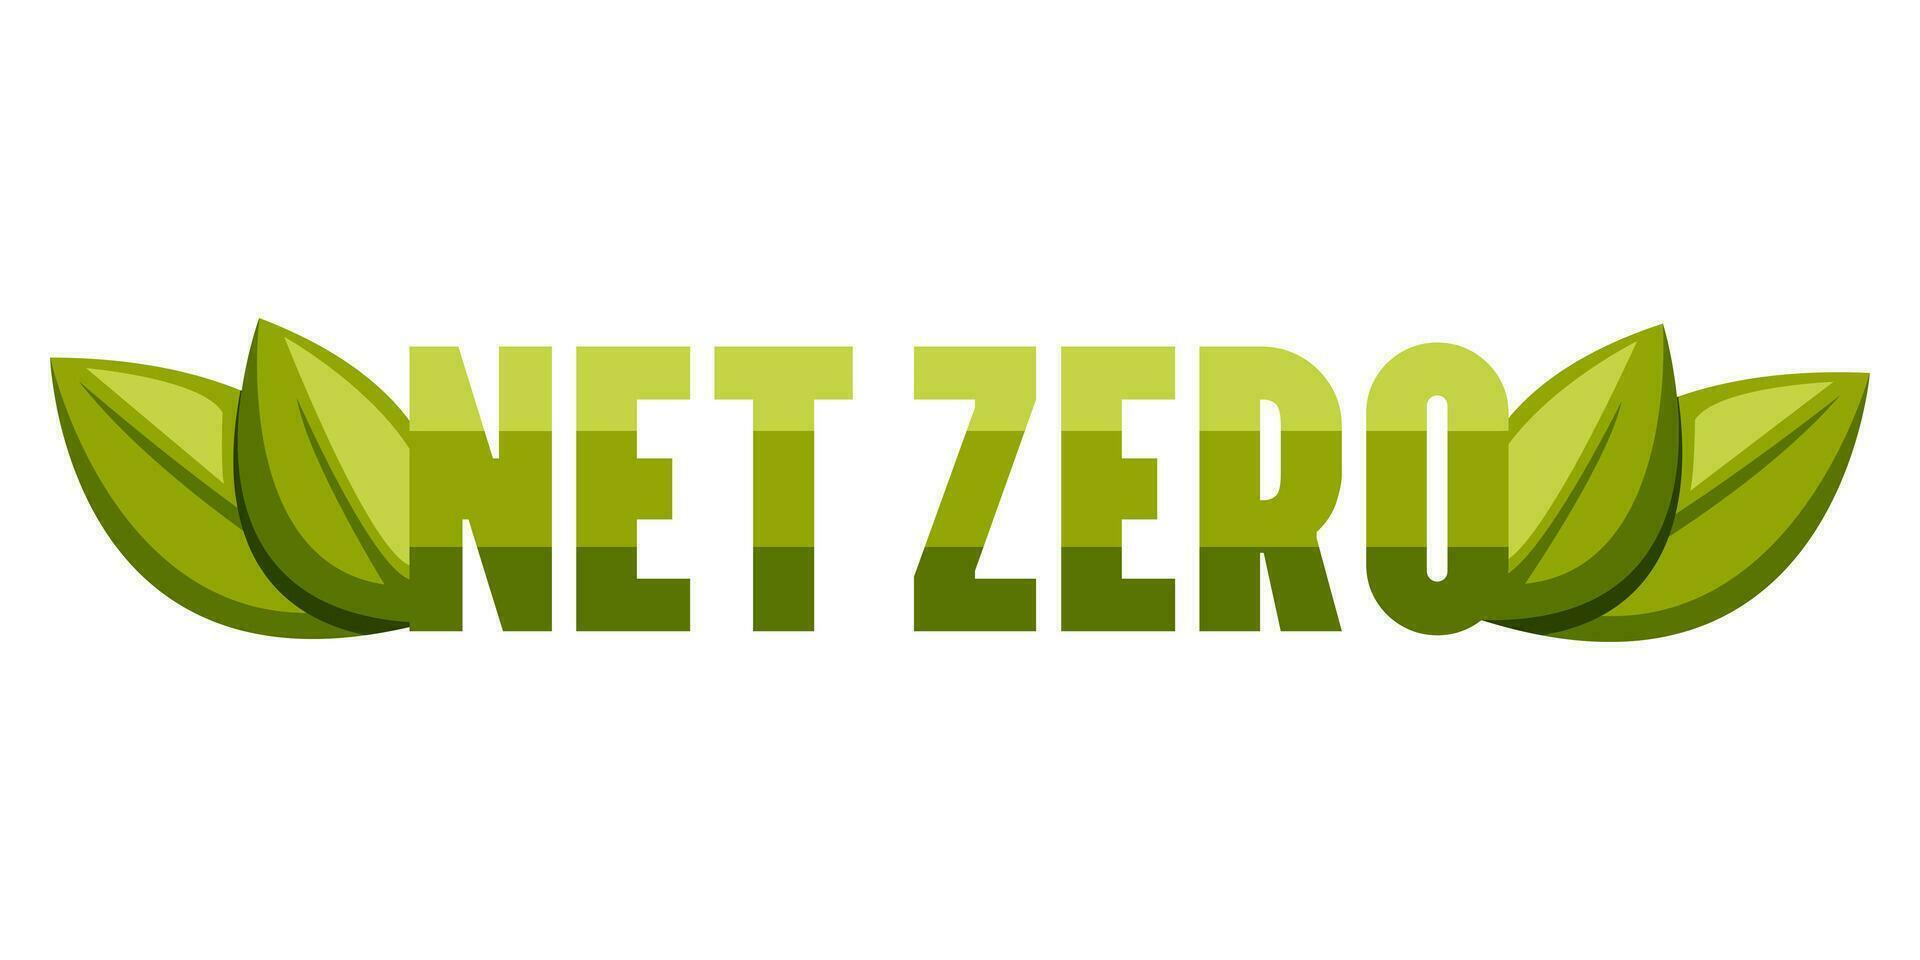 internet zero, texto com folhas, co2 neutro, verde vetor ilustração. eco amigáveis isolado placa. carbono emissões livre, não ar atmosfera poluição industrial Produção